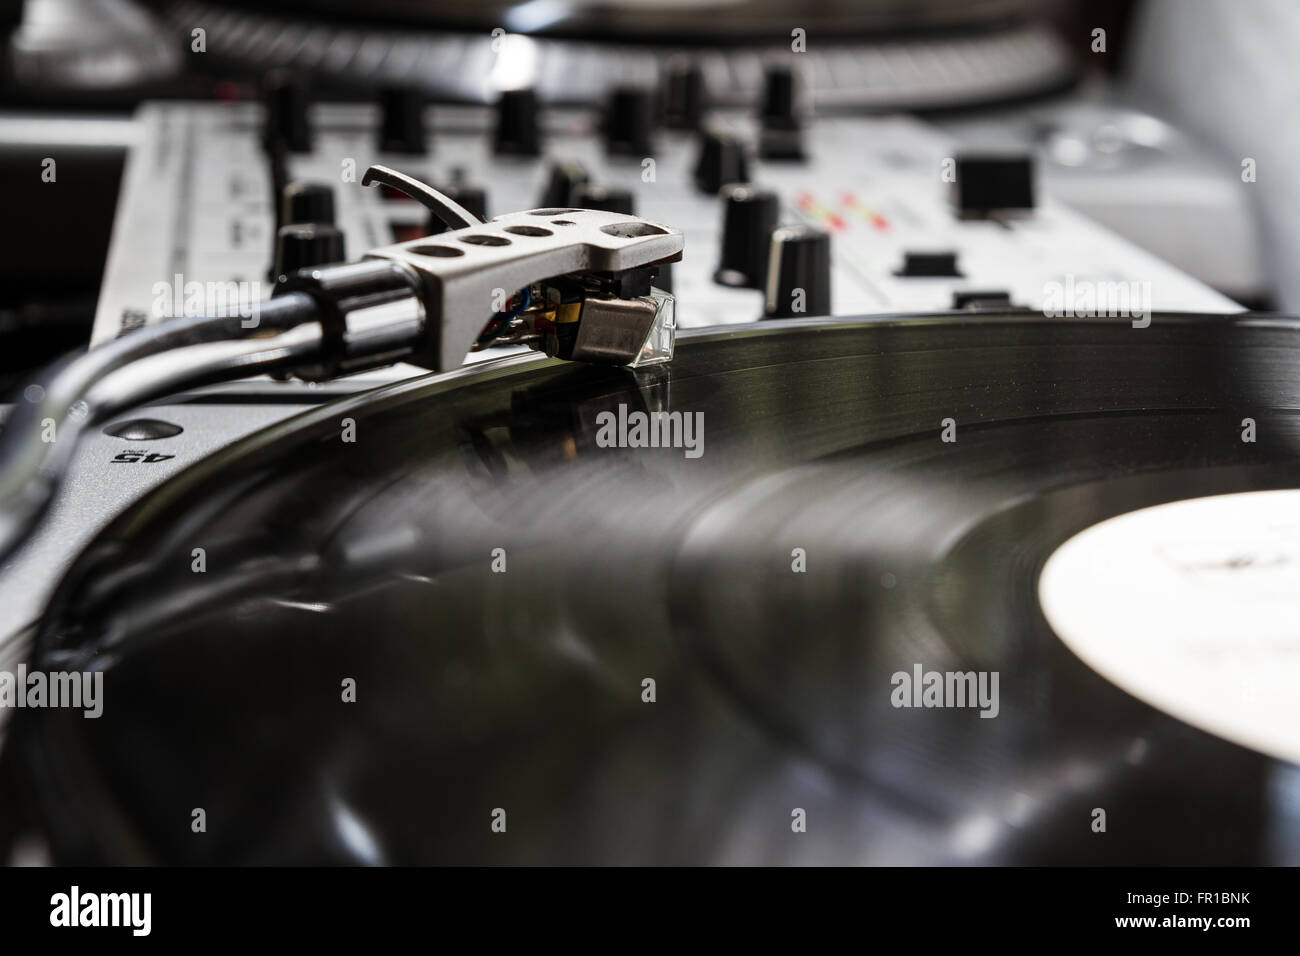 Professioneller Plattenspieler Vinyl-Schallplatten mit Musik zu spielen. Nahaufnahme auf Details: Nadel, Tonarm, Platte, Vinyl-Schallplatte Stockfoto